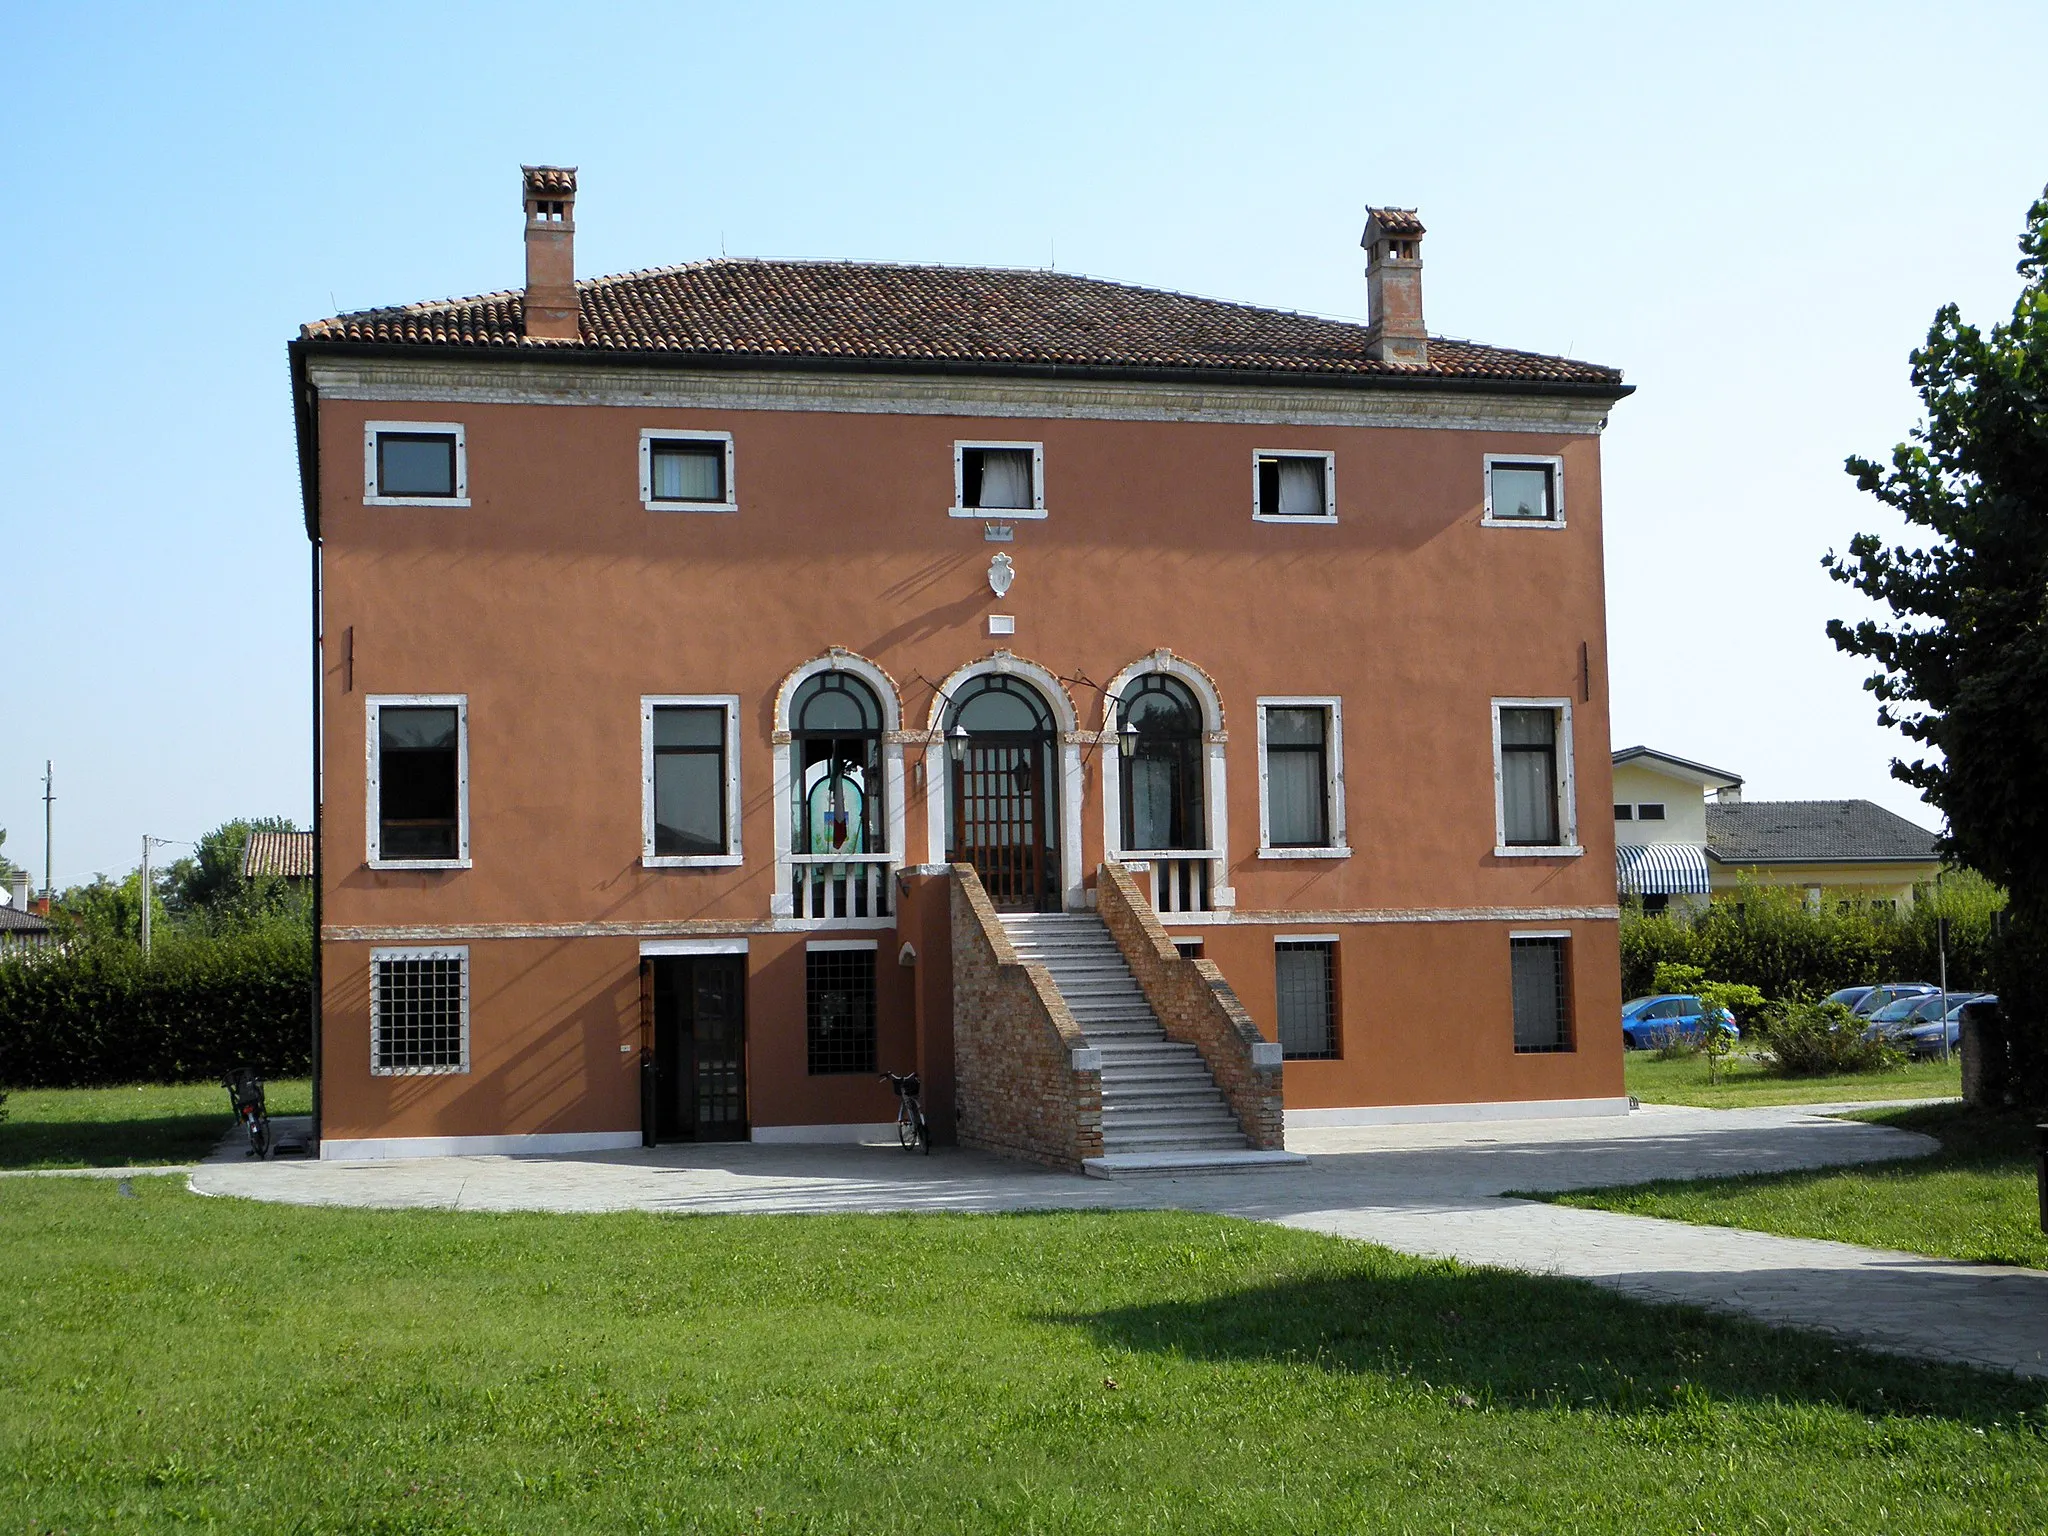 Photo showing: Campagna Lupia: Villa Colonda Marchesini, attuale sede municipale.